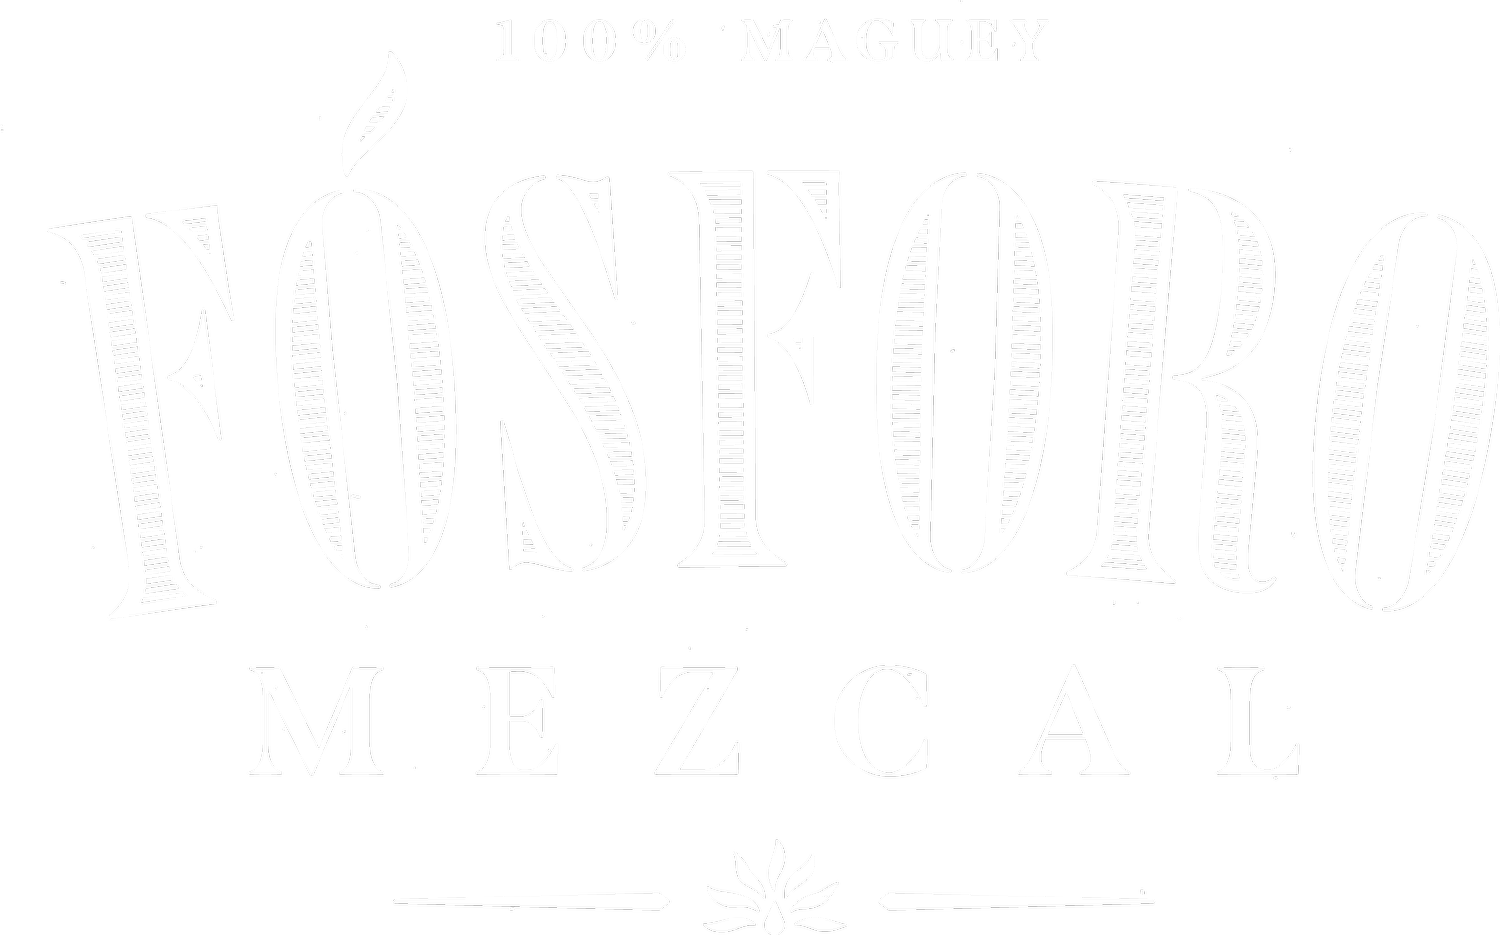 FOSFORO Mezcal